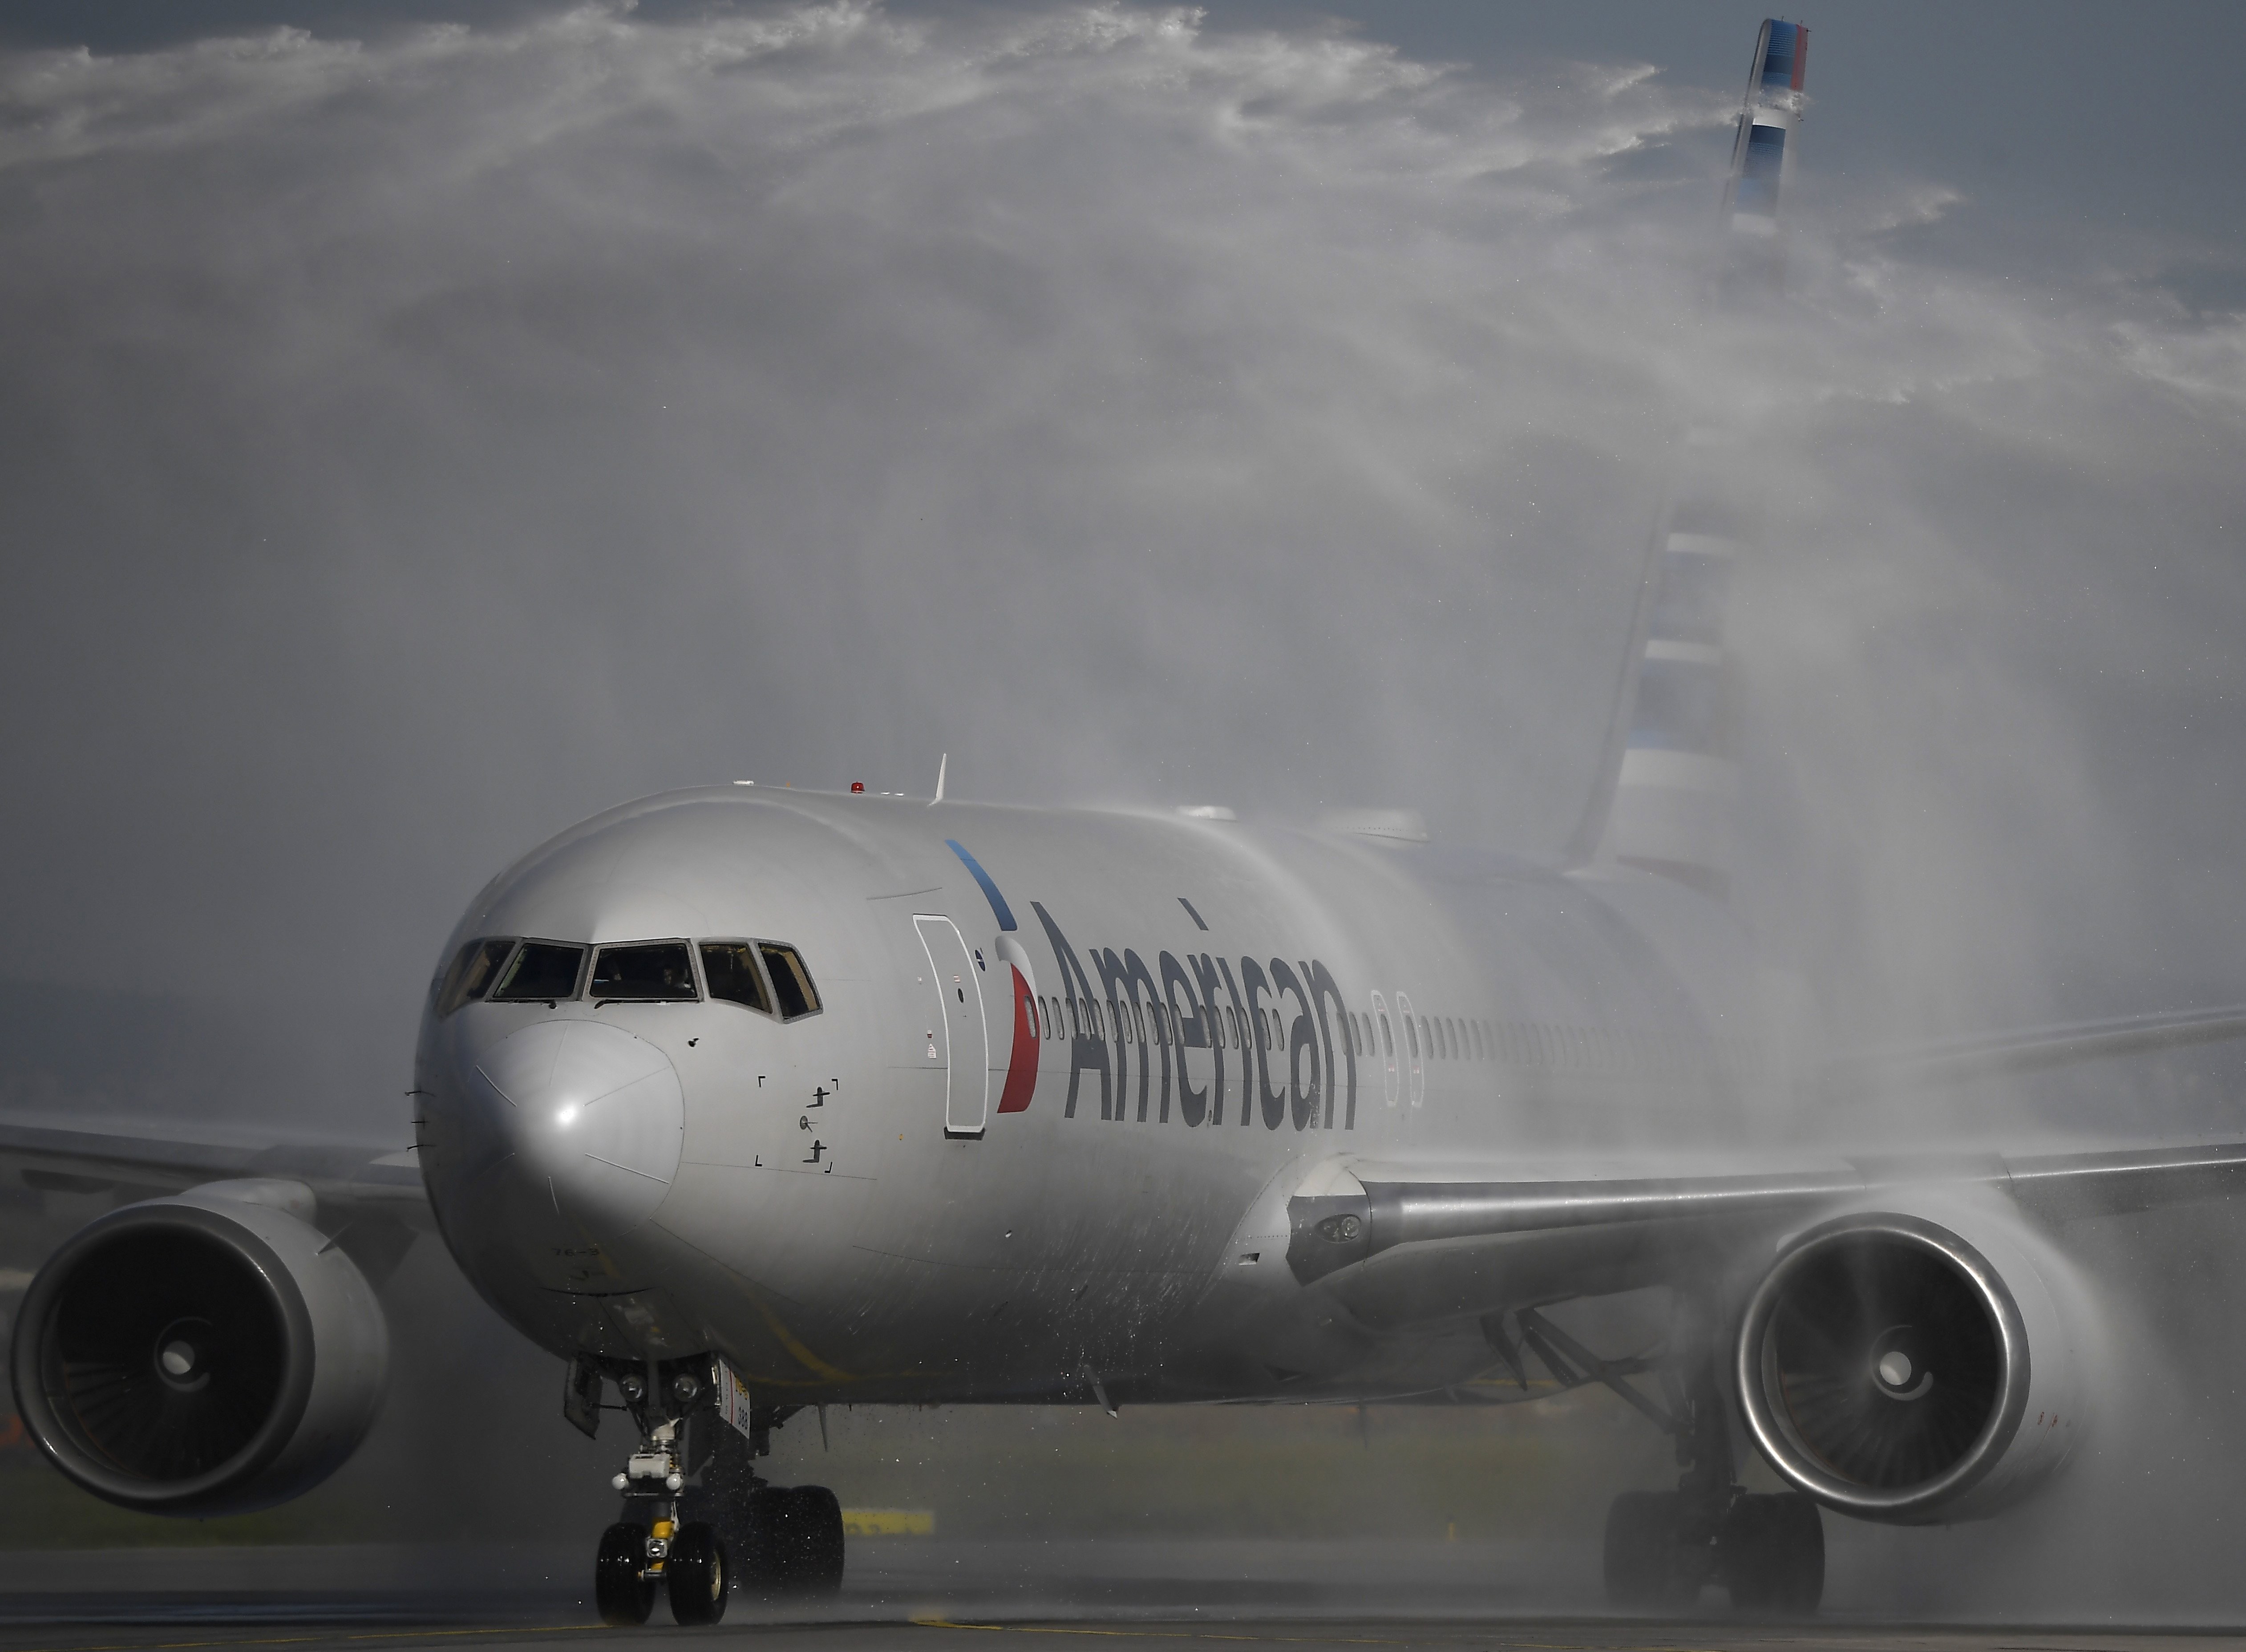 Az American Airlines elindította Philadelphia-Budapest járatát